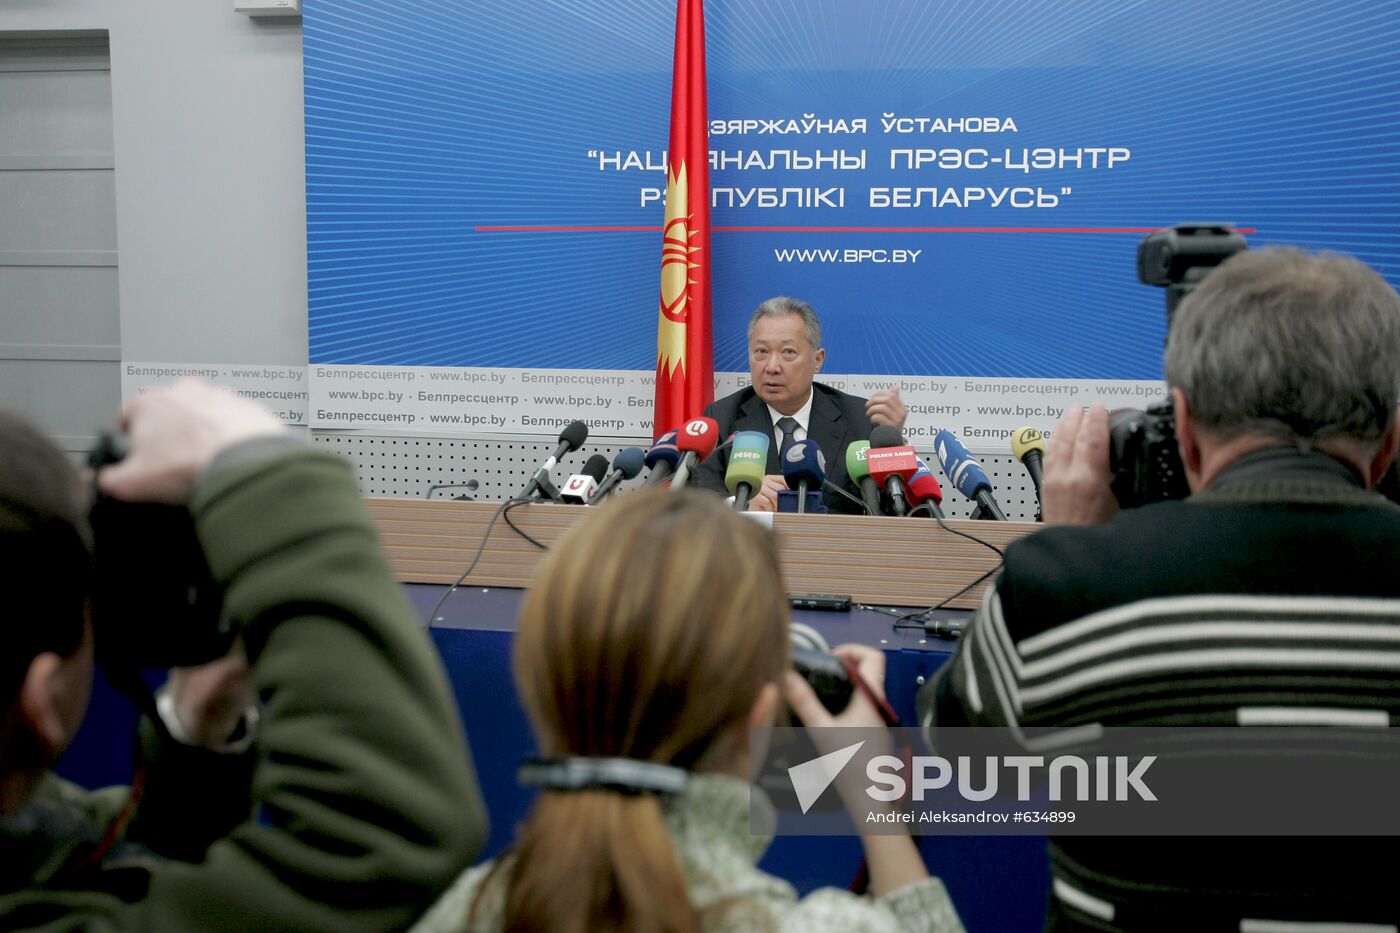 Kurmanbek Bakiyev gives news conference in Minsk